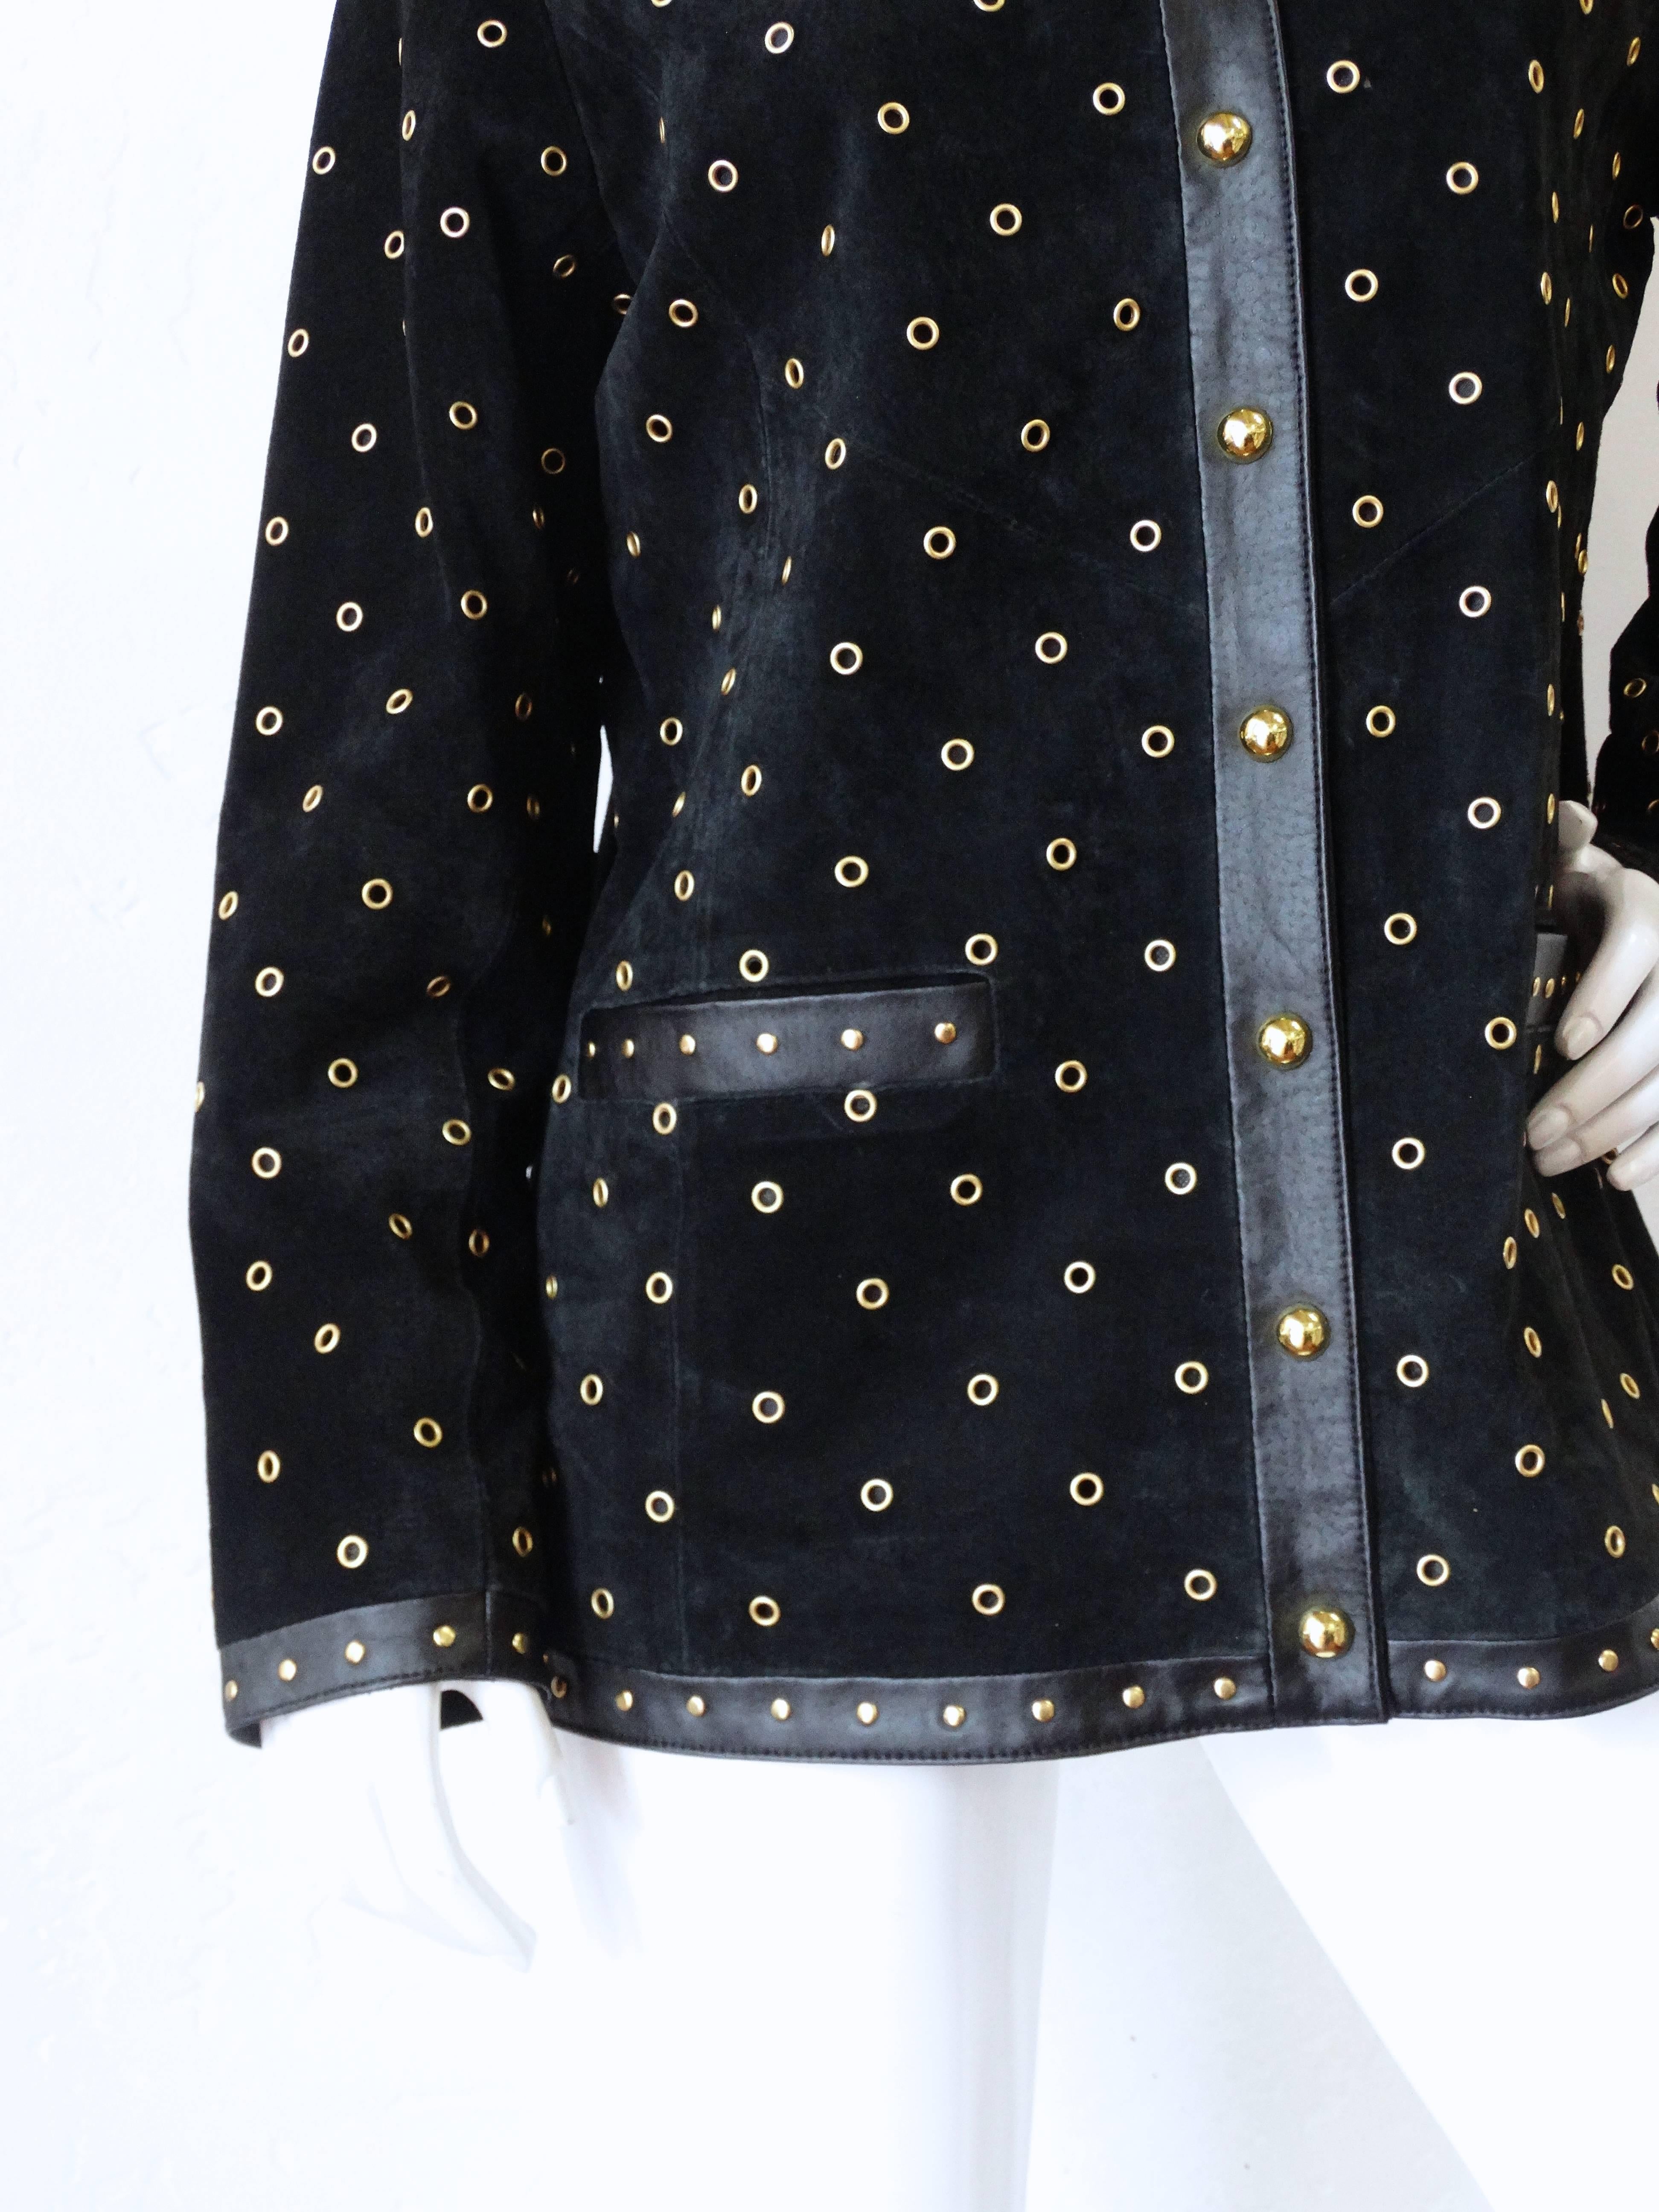 Women's 1980s Black Suede Gold Grommet Jacket